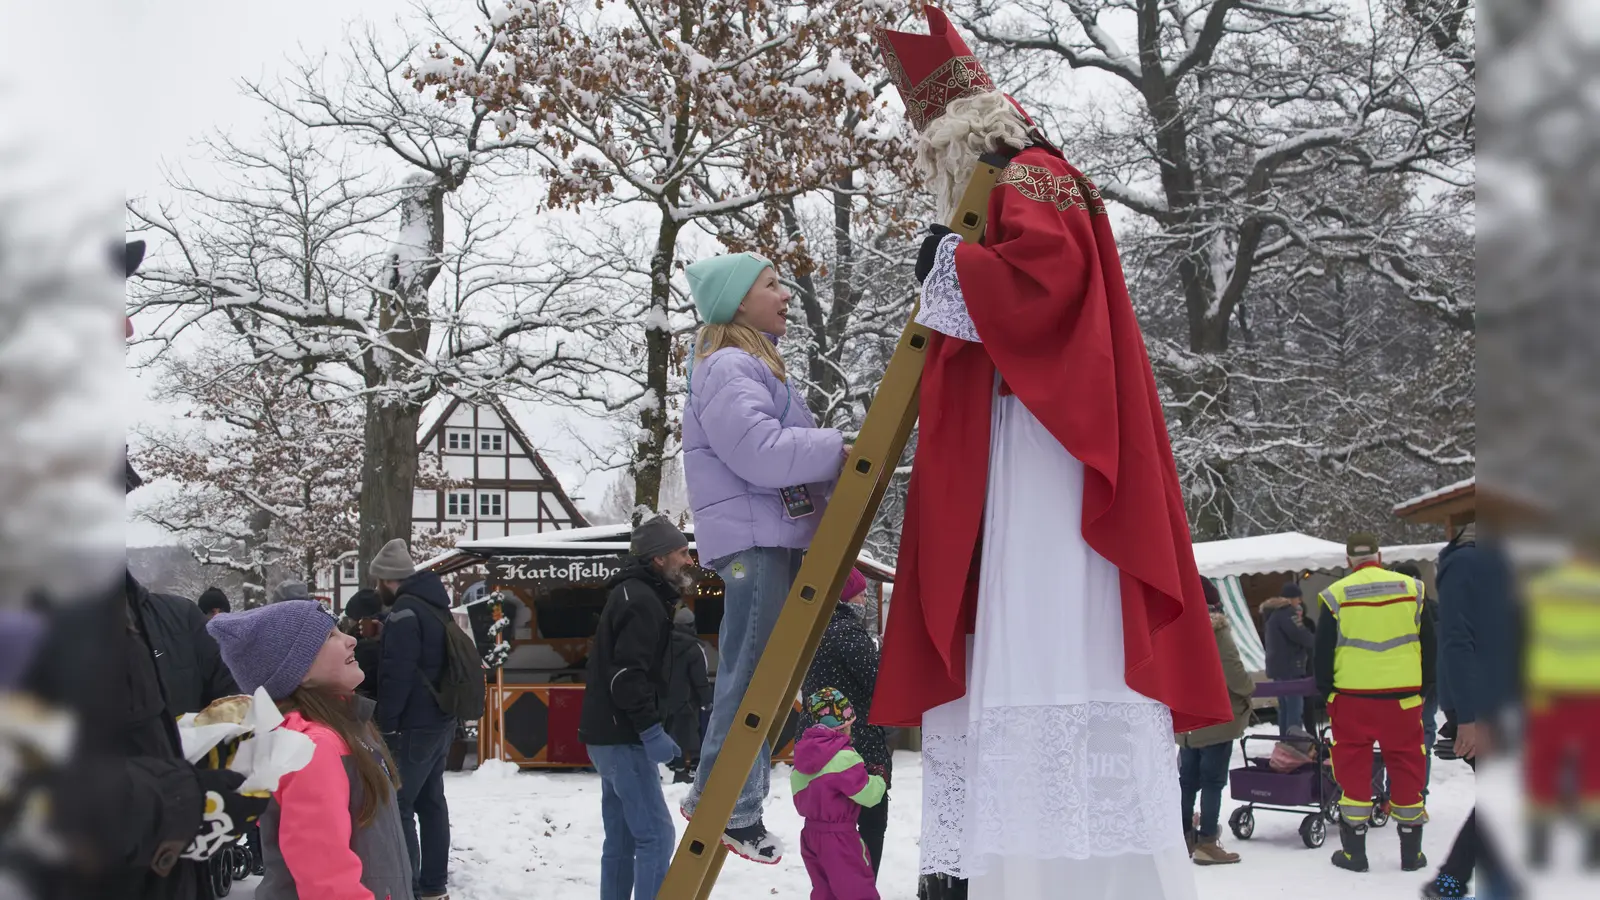 Der Stelzen-Nikolaus war in den Tierpark gekommen und nahm die Wünsche der Kinder entgegen. (Foto: Stefan Bönning)